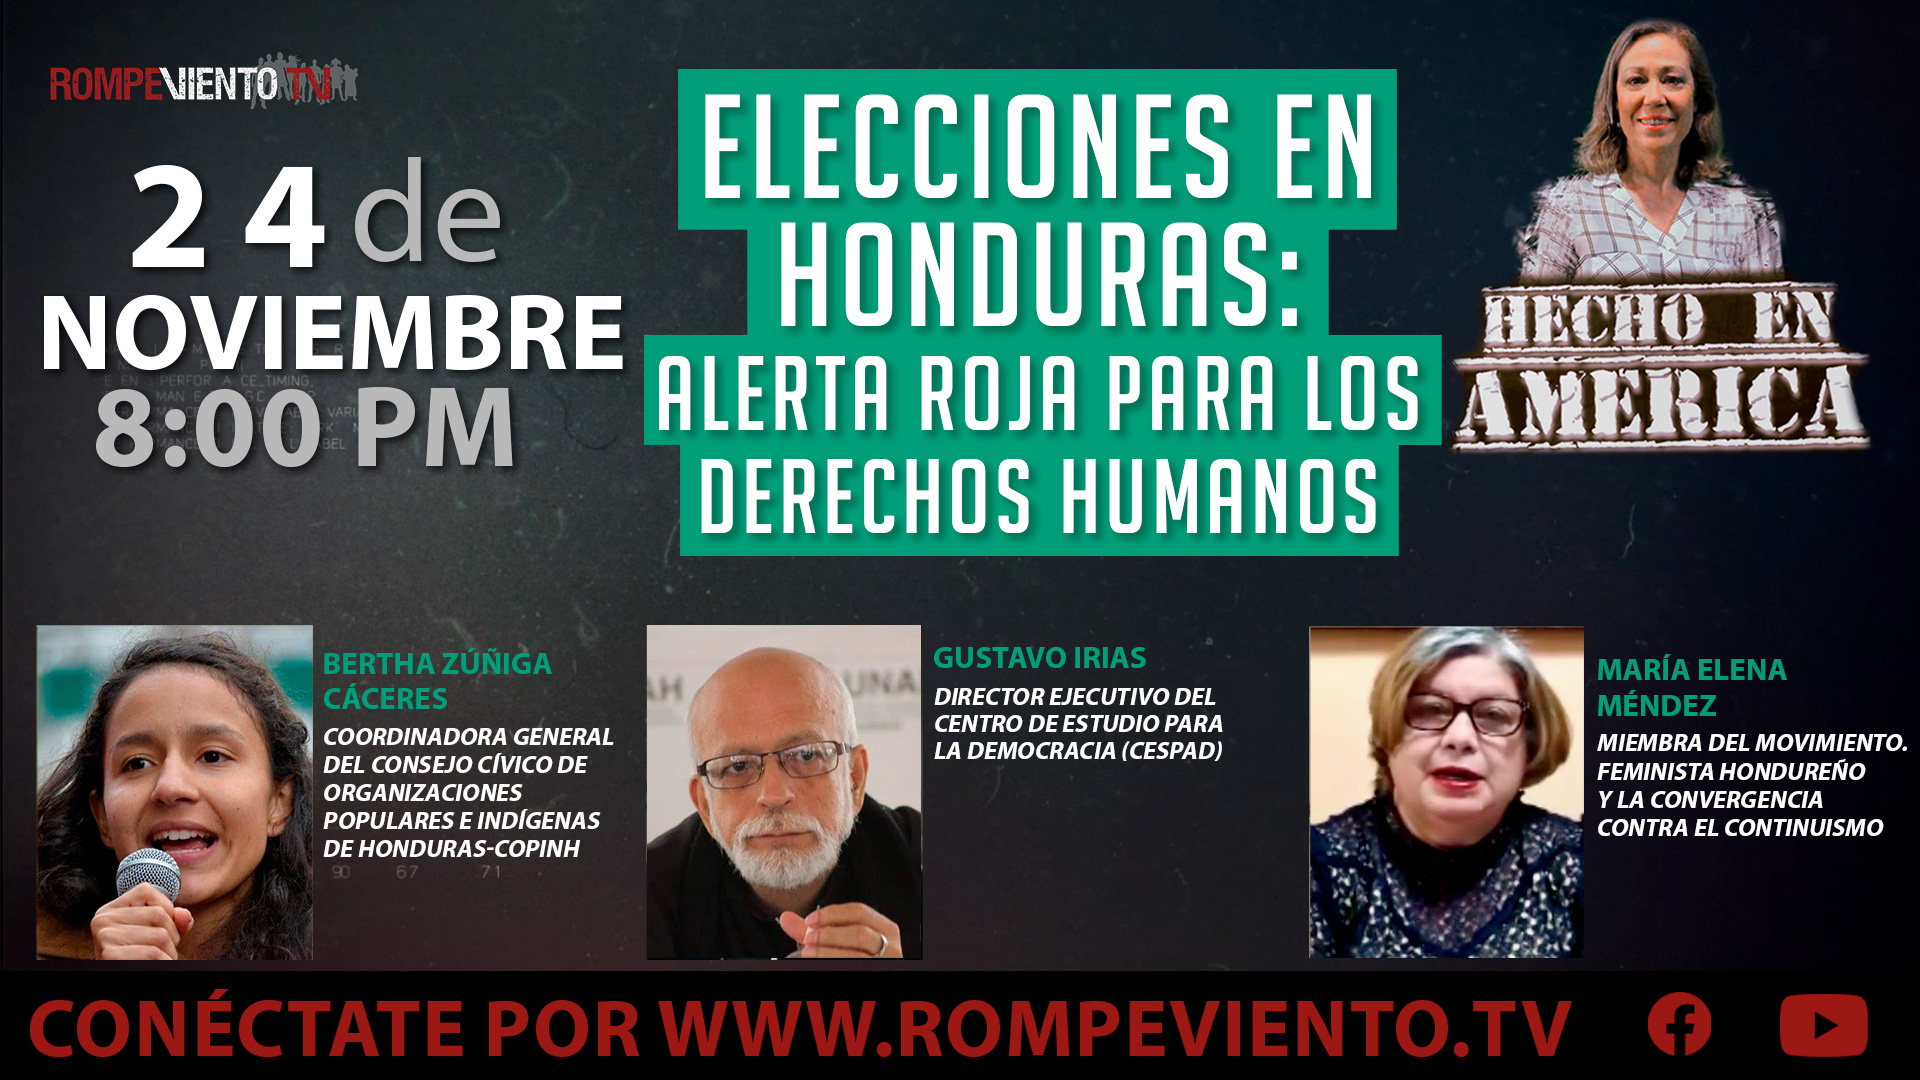 Elecciones en Honduras: Alerta roja para los derechos humanos - Hecho en América